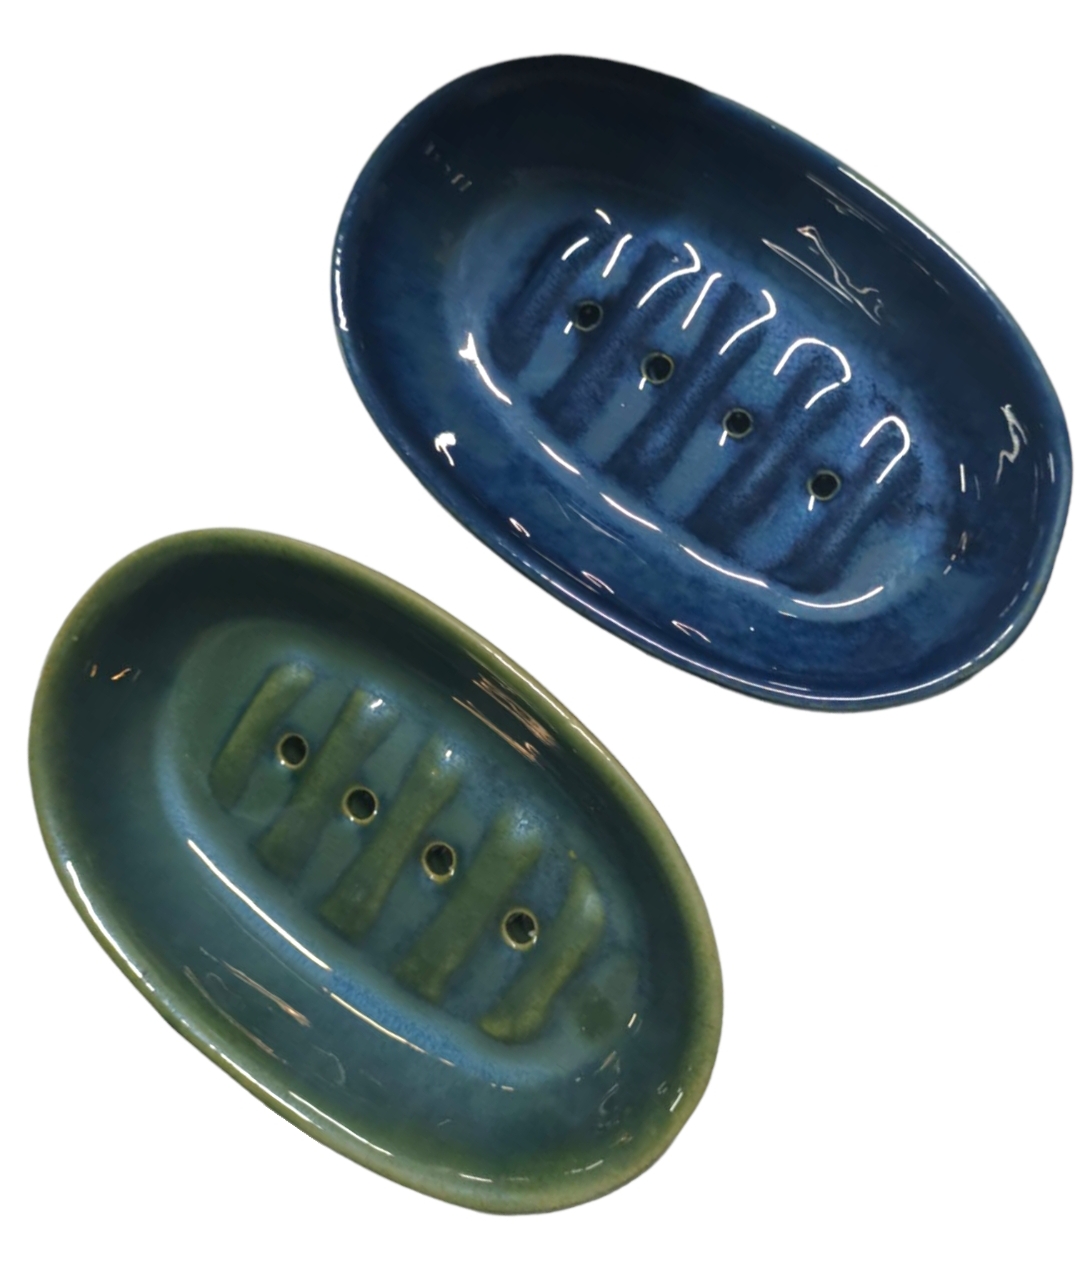 Ceramic soap case